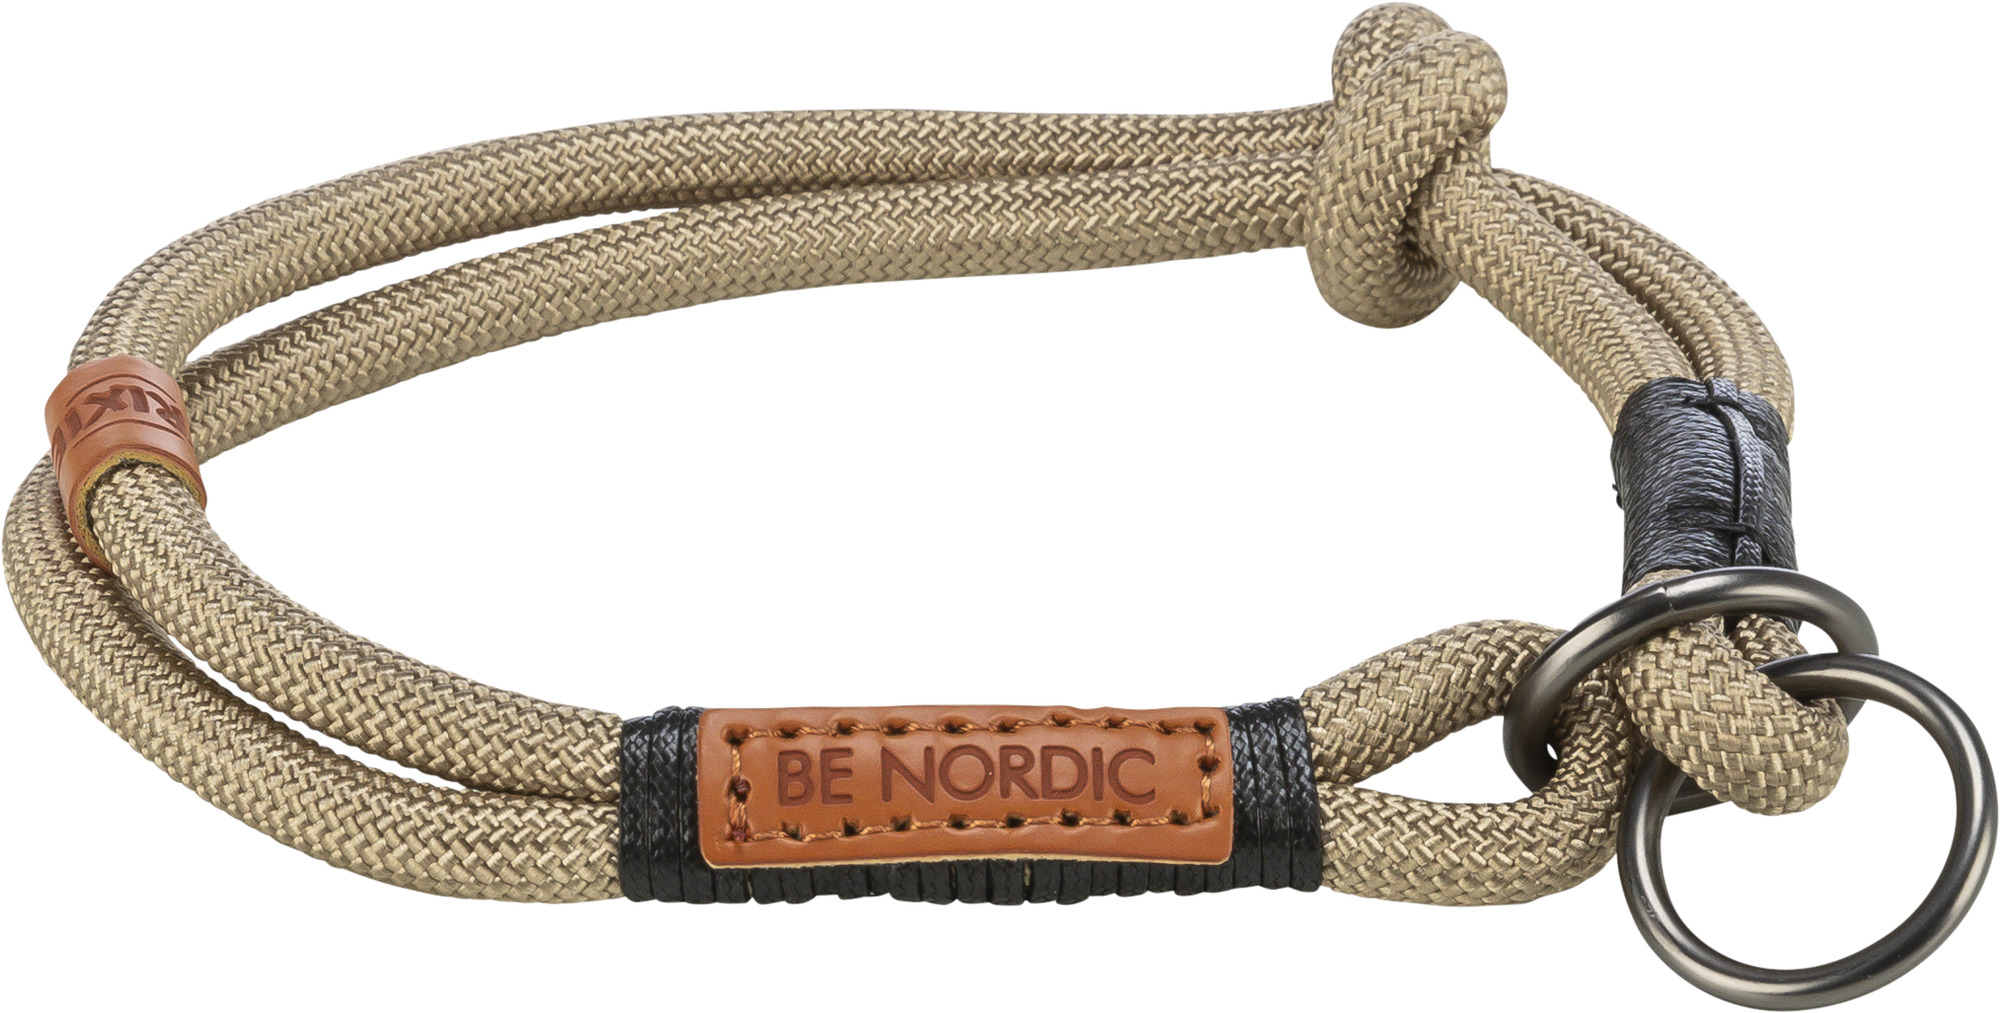 BE NORDIC collare in corda semi-choke - Sabbia/Nero